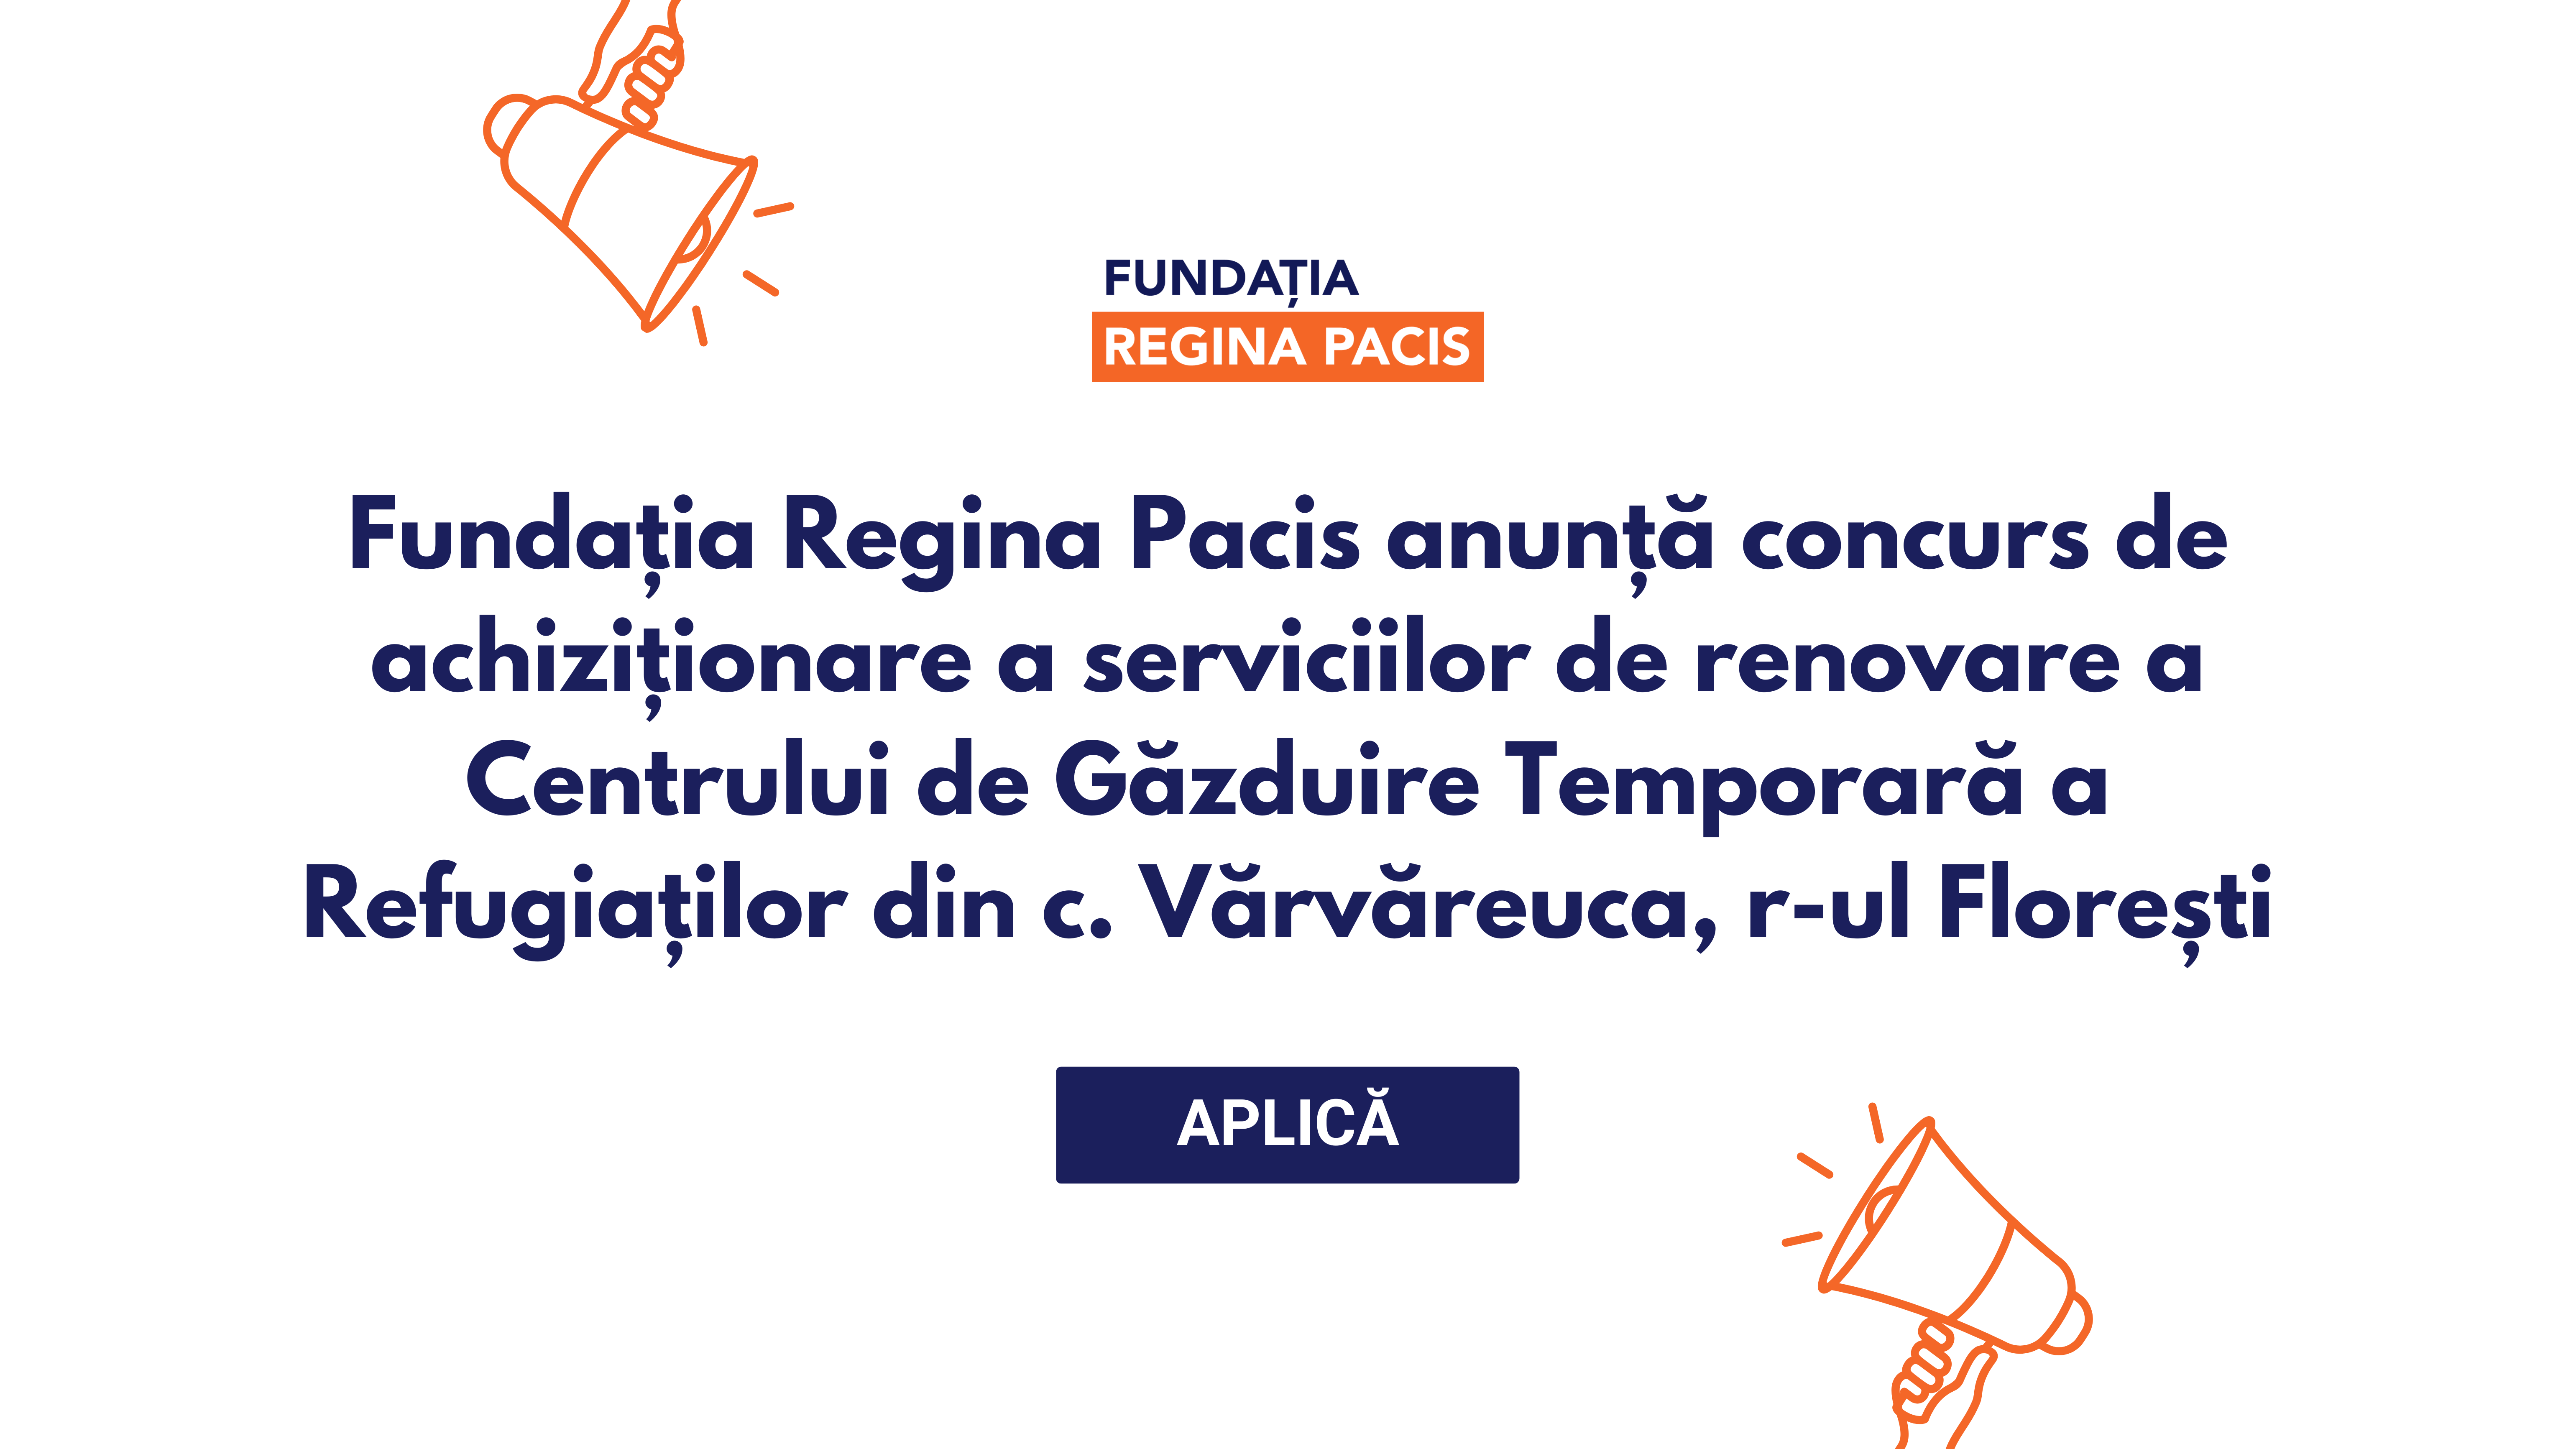 Fundația Regina Pacis anunță concurs de achiziționare a serviciilor de renovare a Centrului de Găzduire Temporară a Refugiaților din c. Vărvăreuca, r-ul Florești